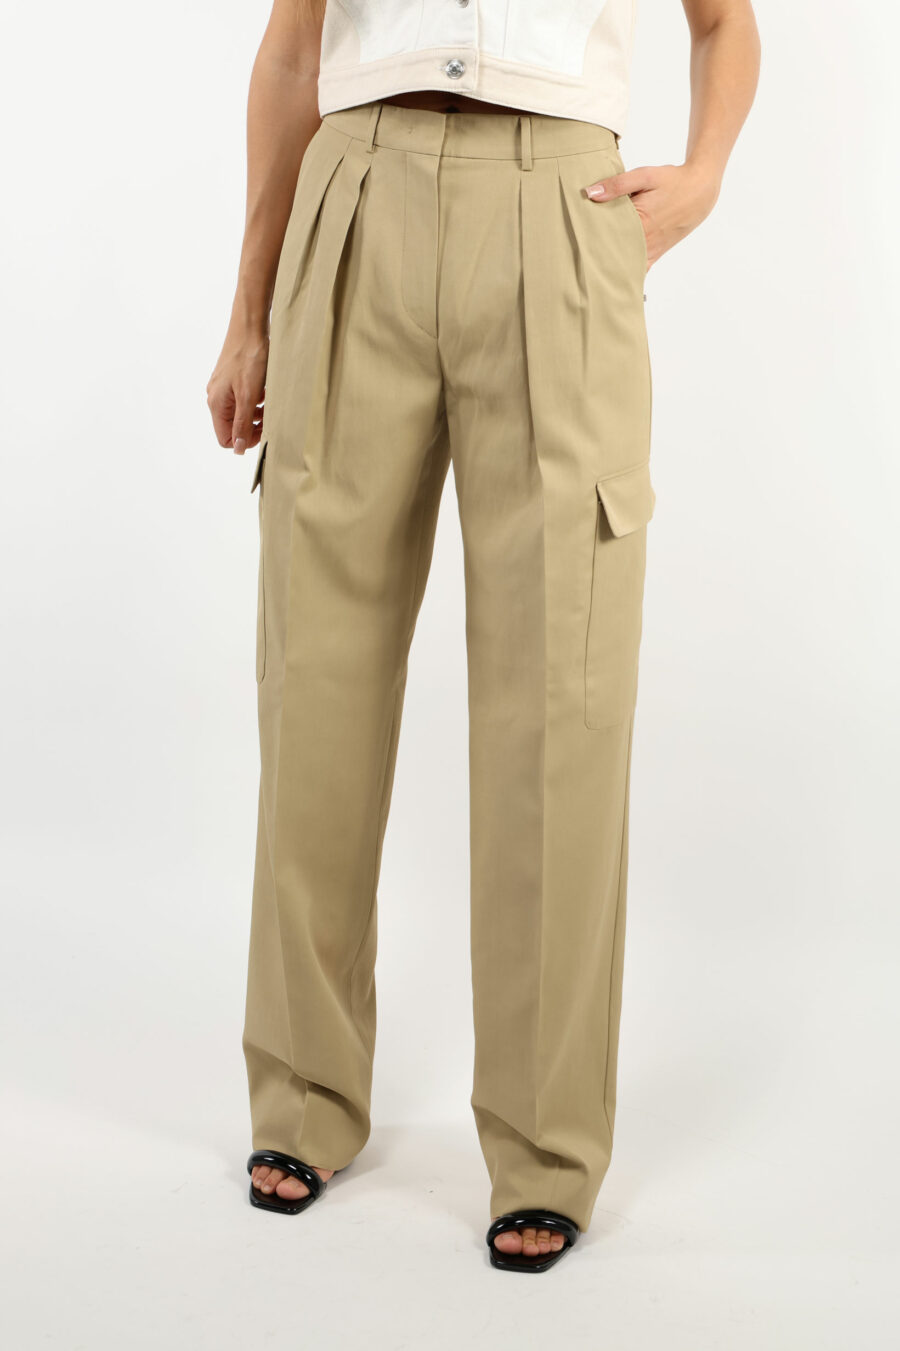 Pantalón beige estilo cargo ancho - 109424